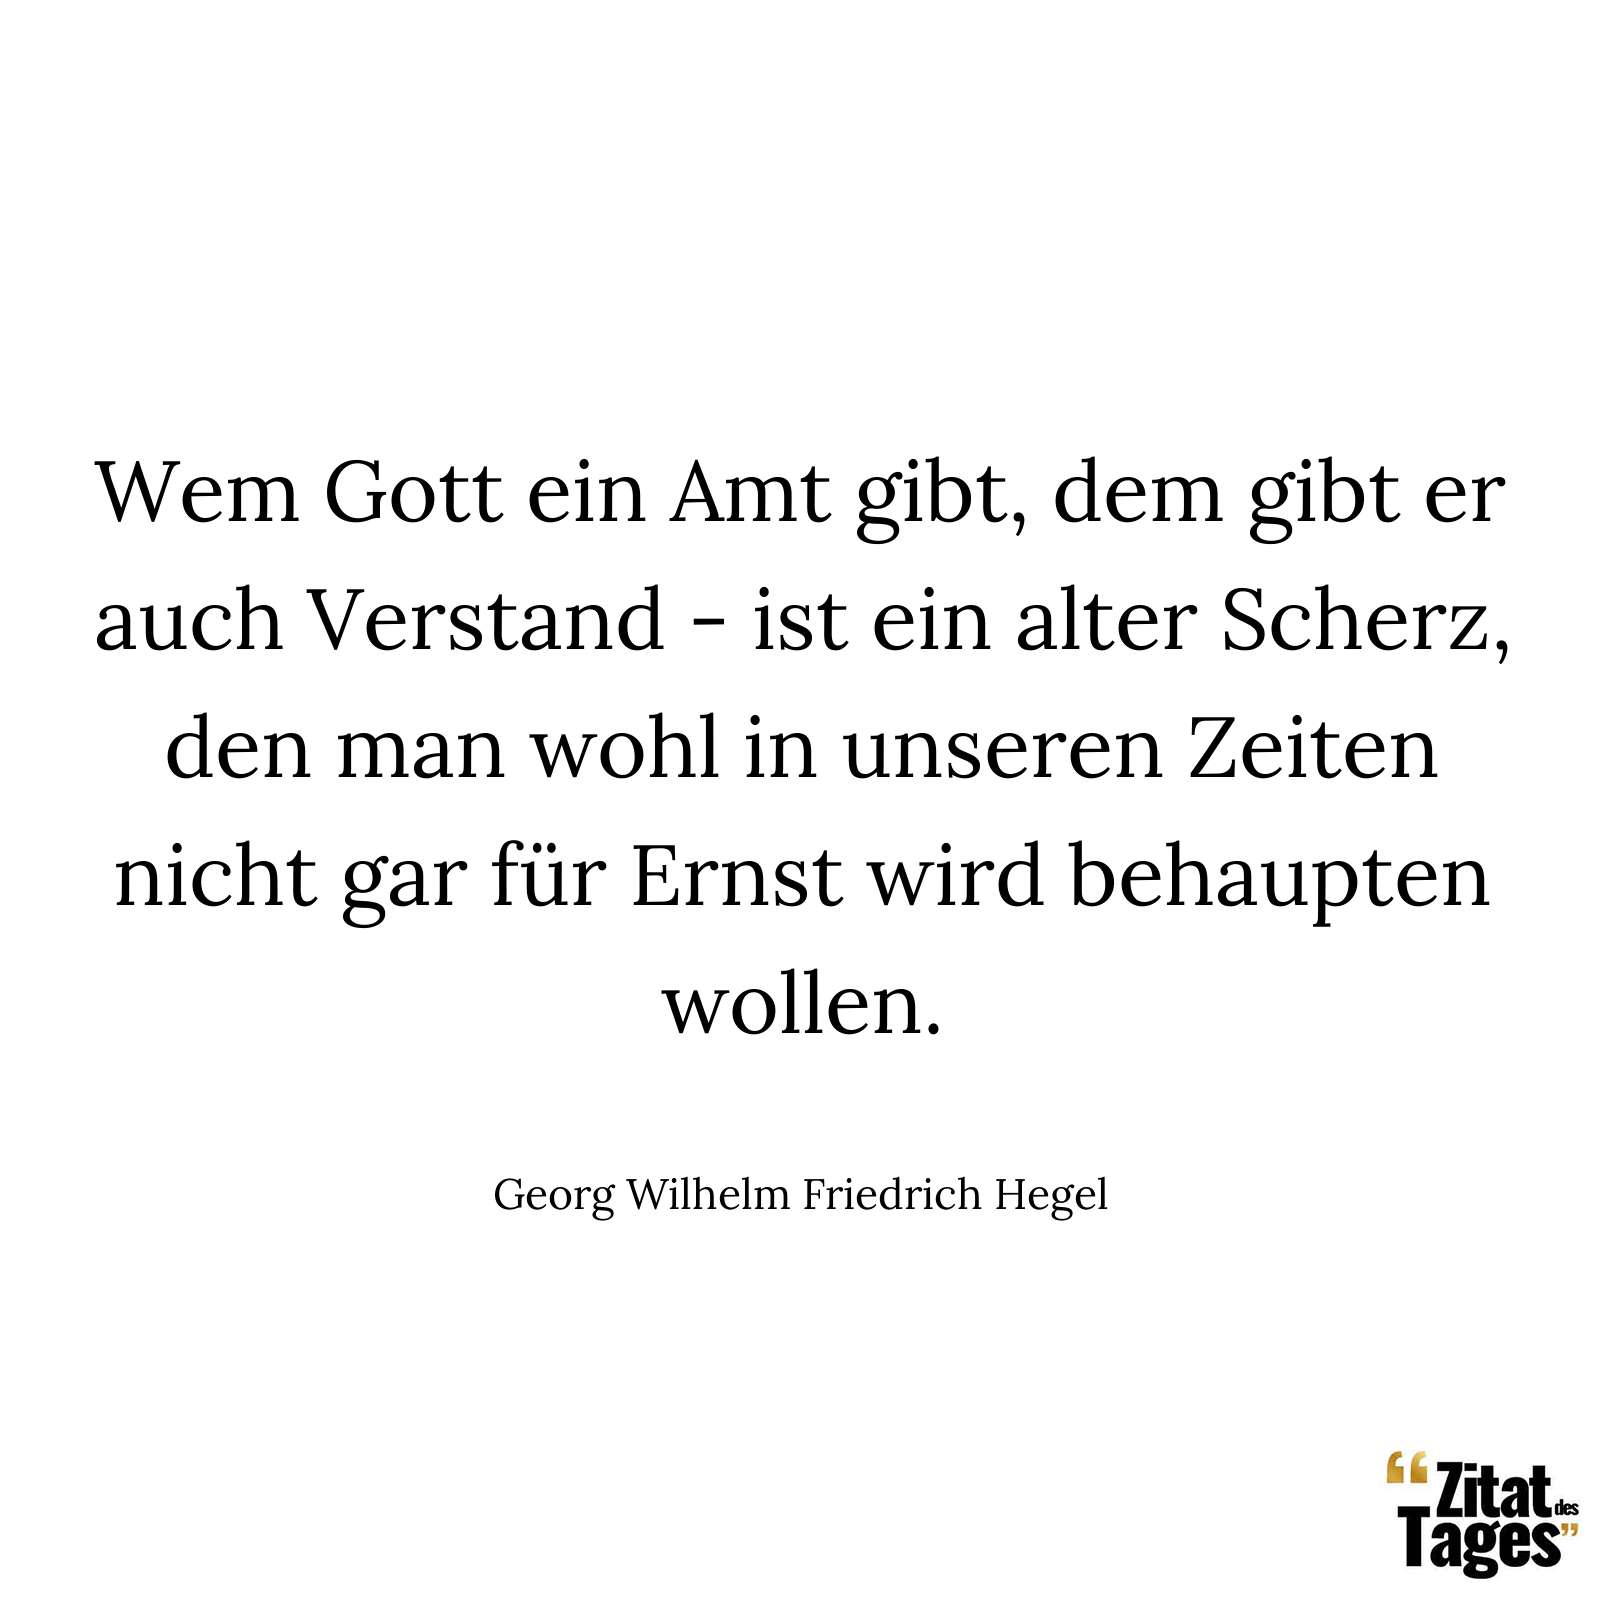 Wem Gott ein Amt gibt, dem gibt er auch Verstand - ist ein alter Scherz, den man wohl in unseren Zeiten nicht gar für Ernst wird behaupten wollen. - Georg Wilhelm Friedrich Hegel